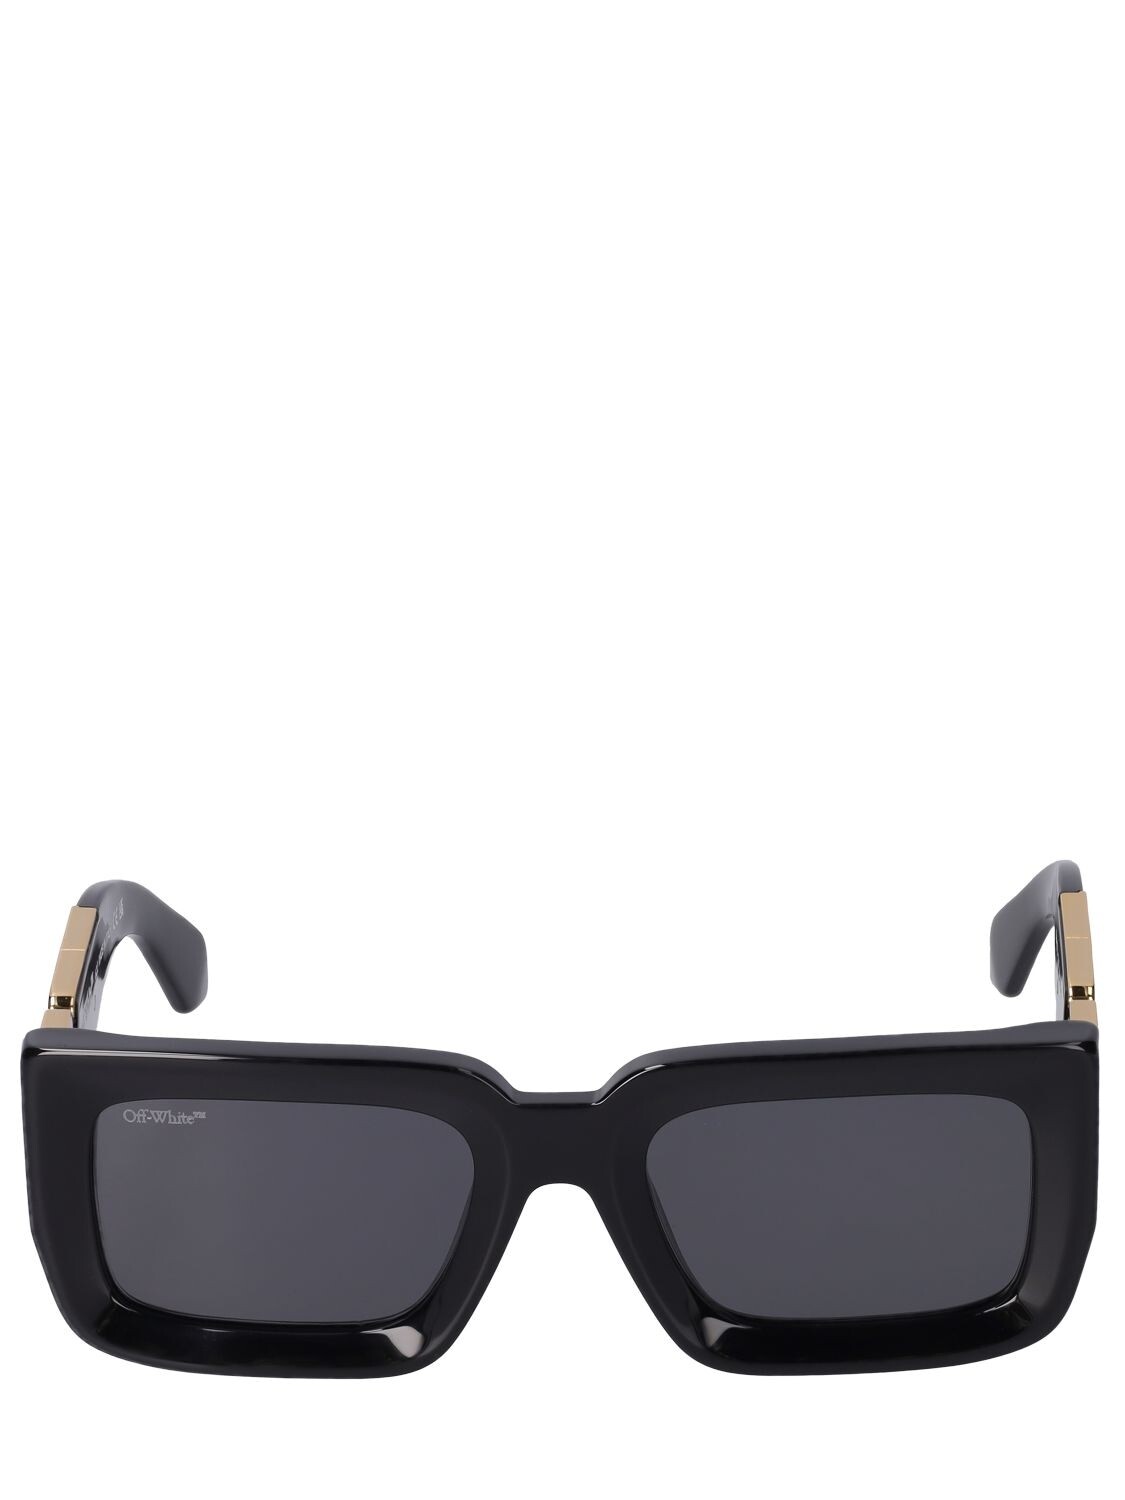 OFF-WHITE Boston Squared Acetate Sunglasses in black